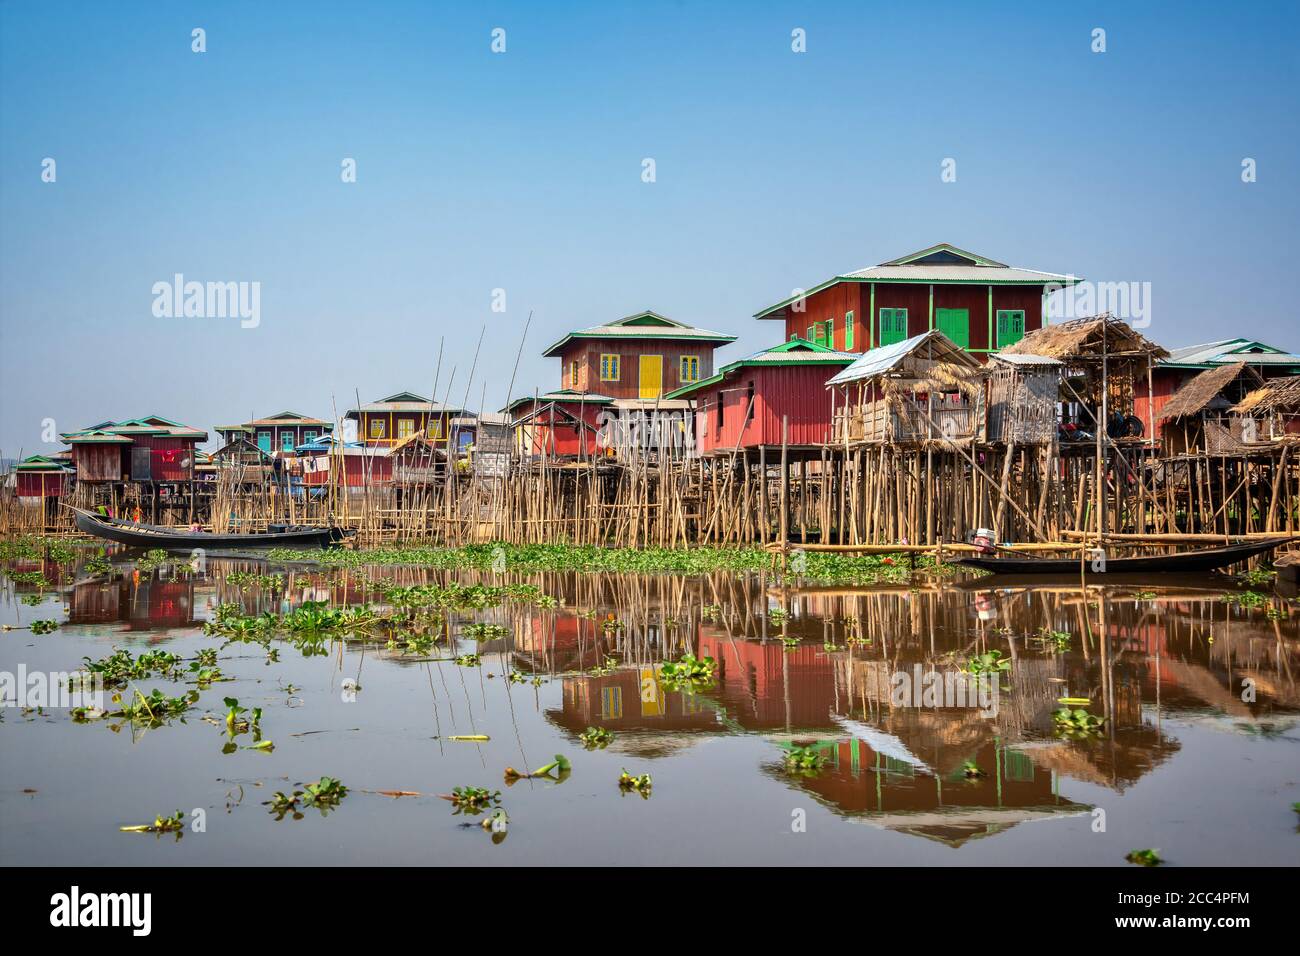 Village flottant coloré avec des maisons à pilotis sur le lac Inle en Birmanie, Myanmar Banque D'Images